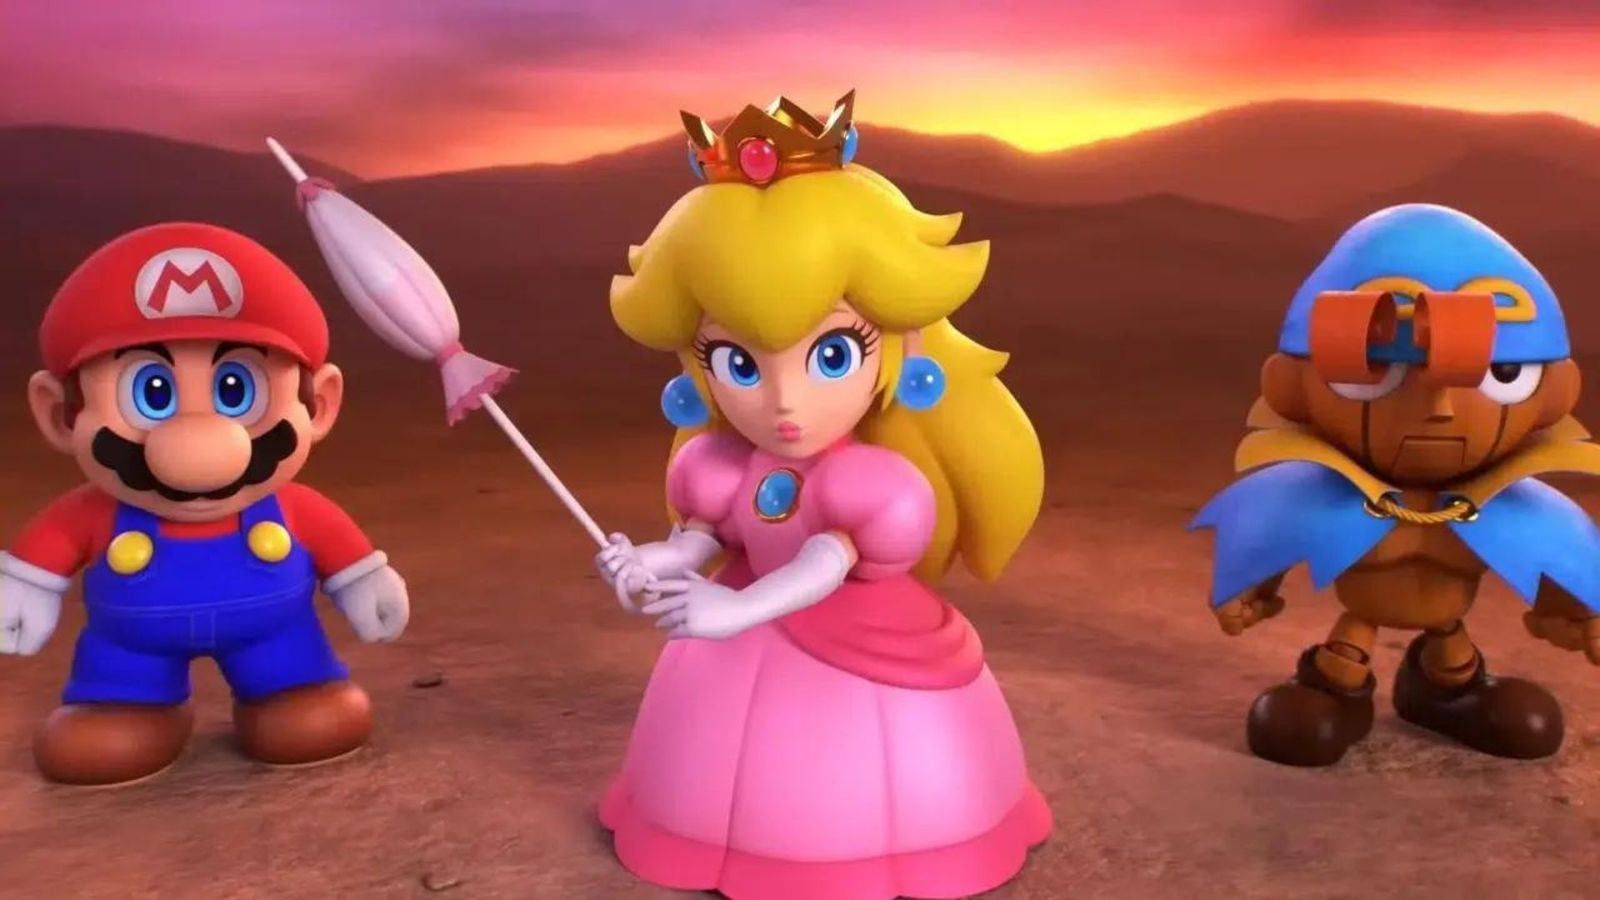 Nintendo characters Mario, Peach, and Geno in Super Mario RPG